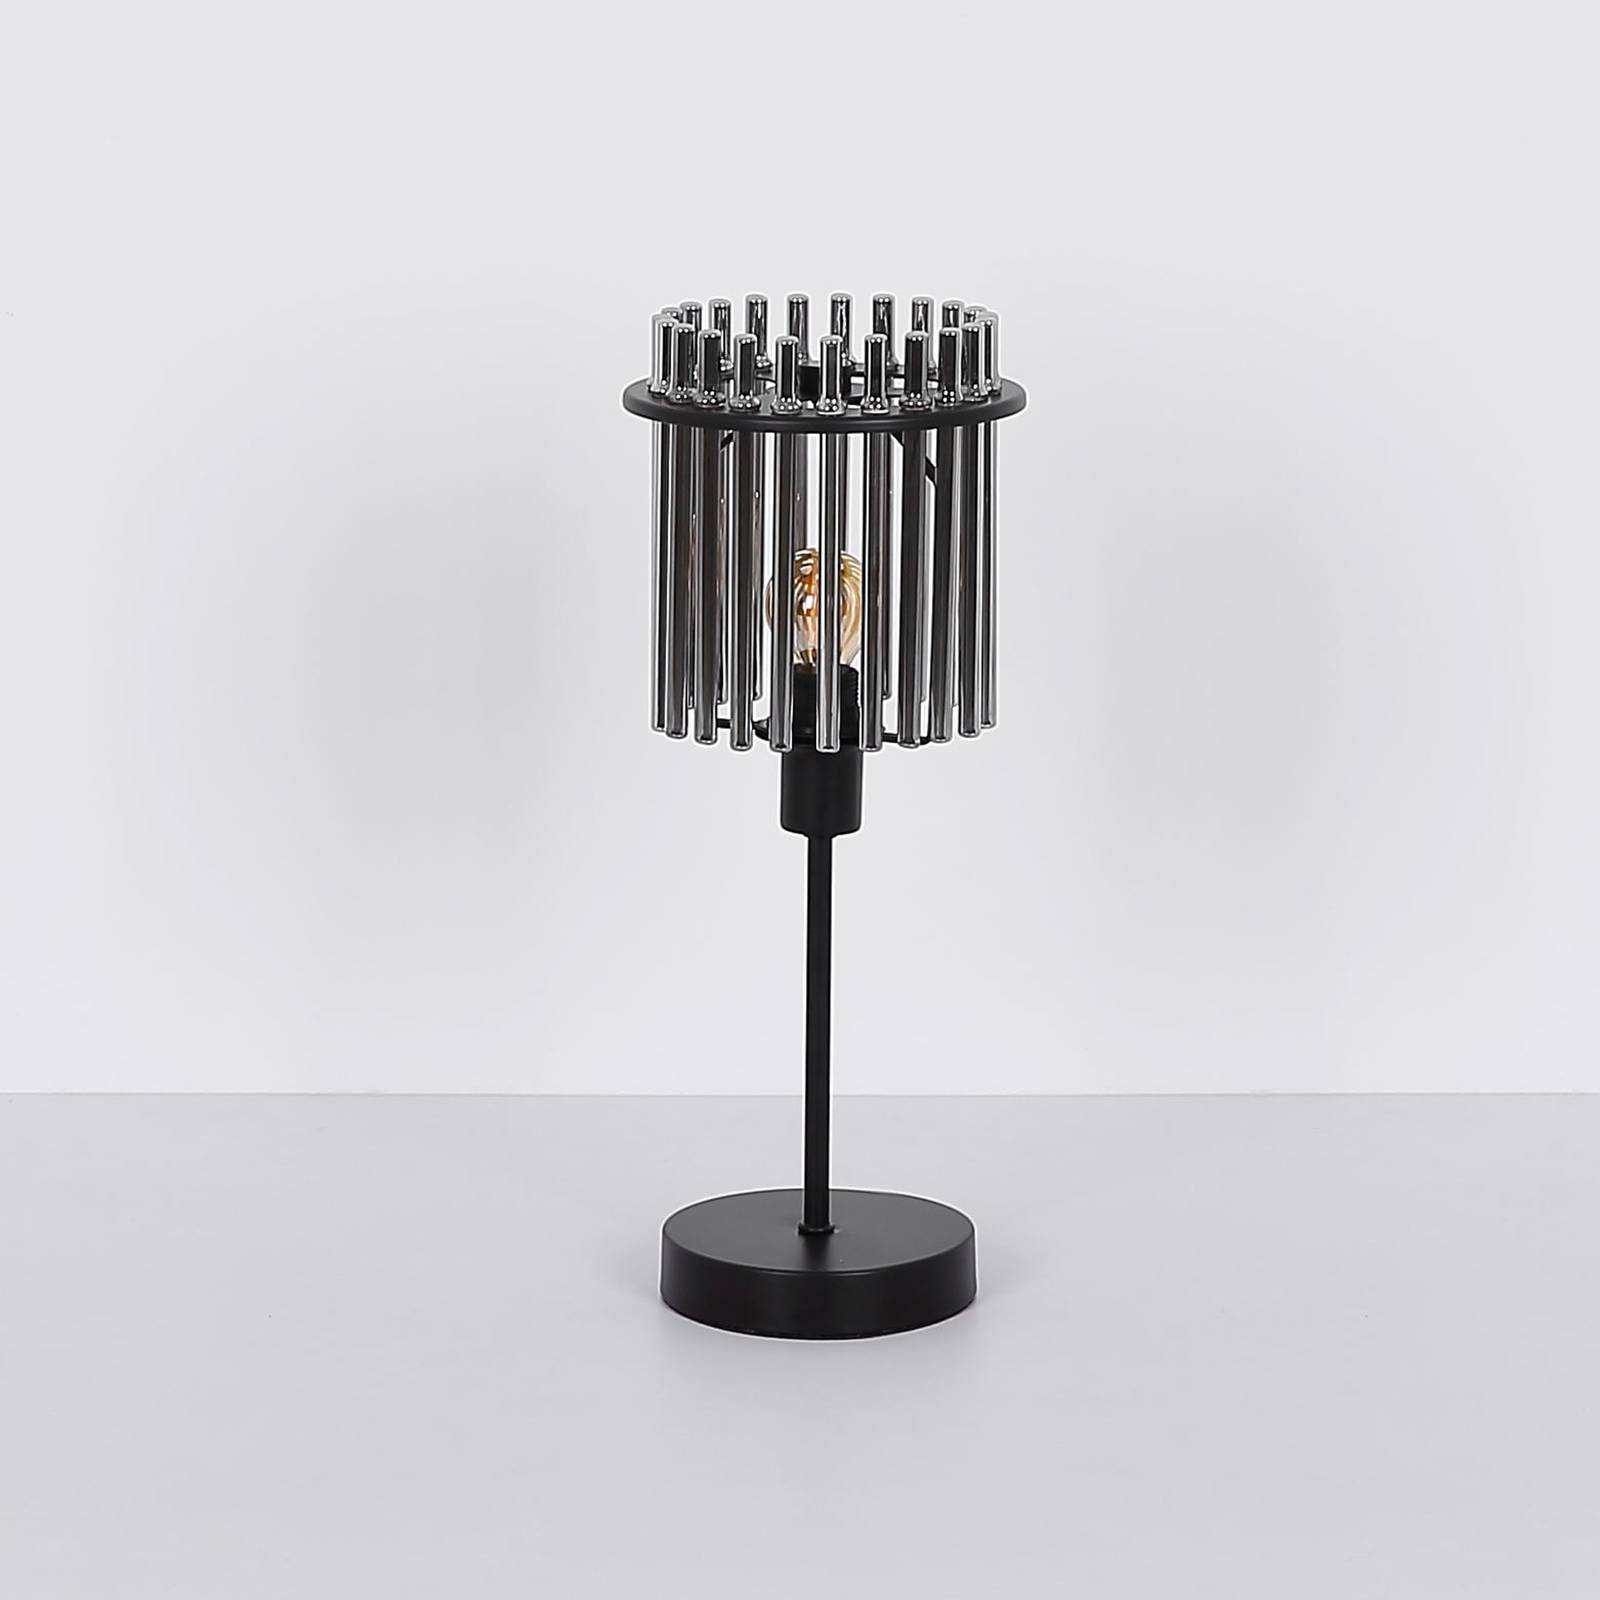 Gorley bordlampe høyde 37,5 cm røykgrått glass/metall